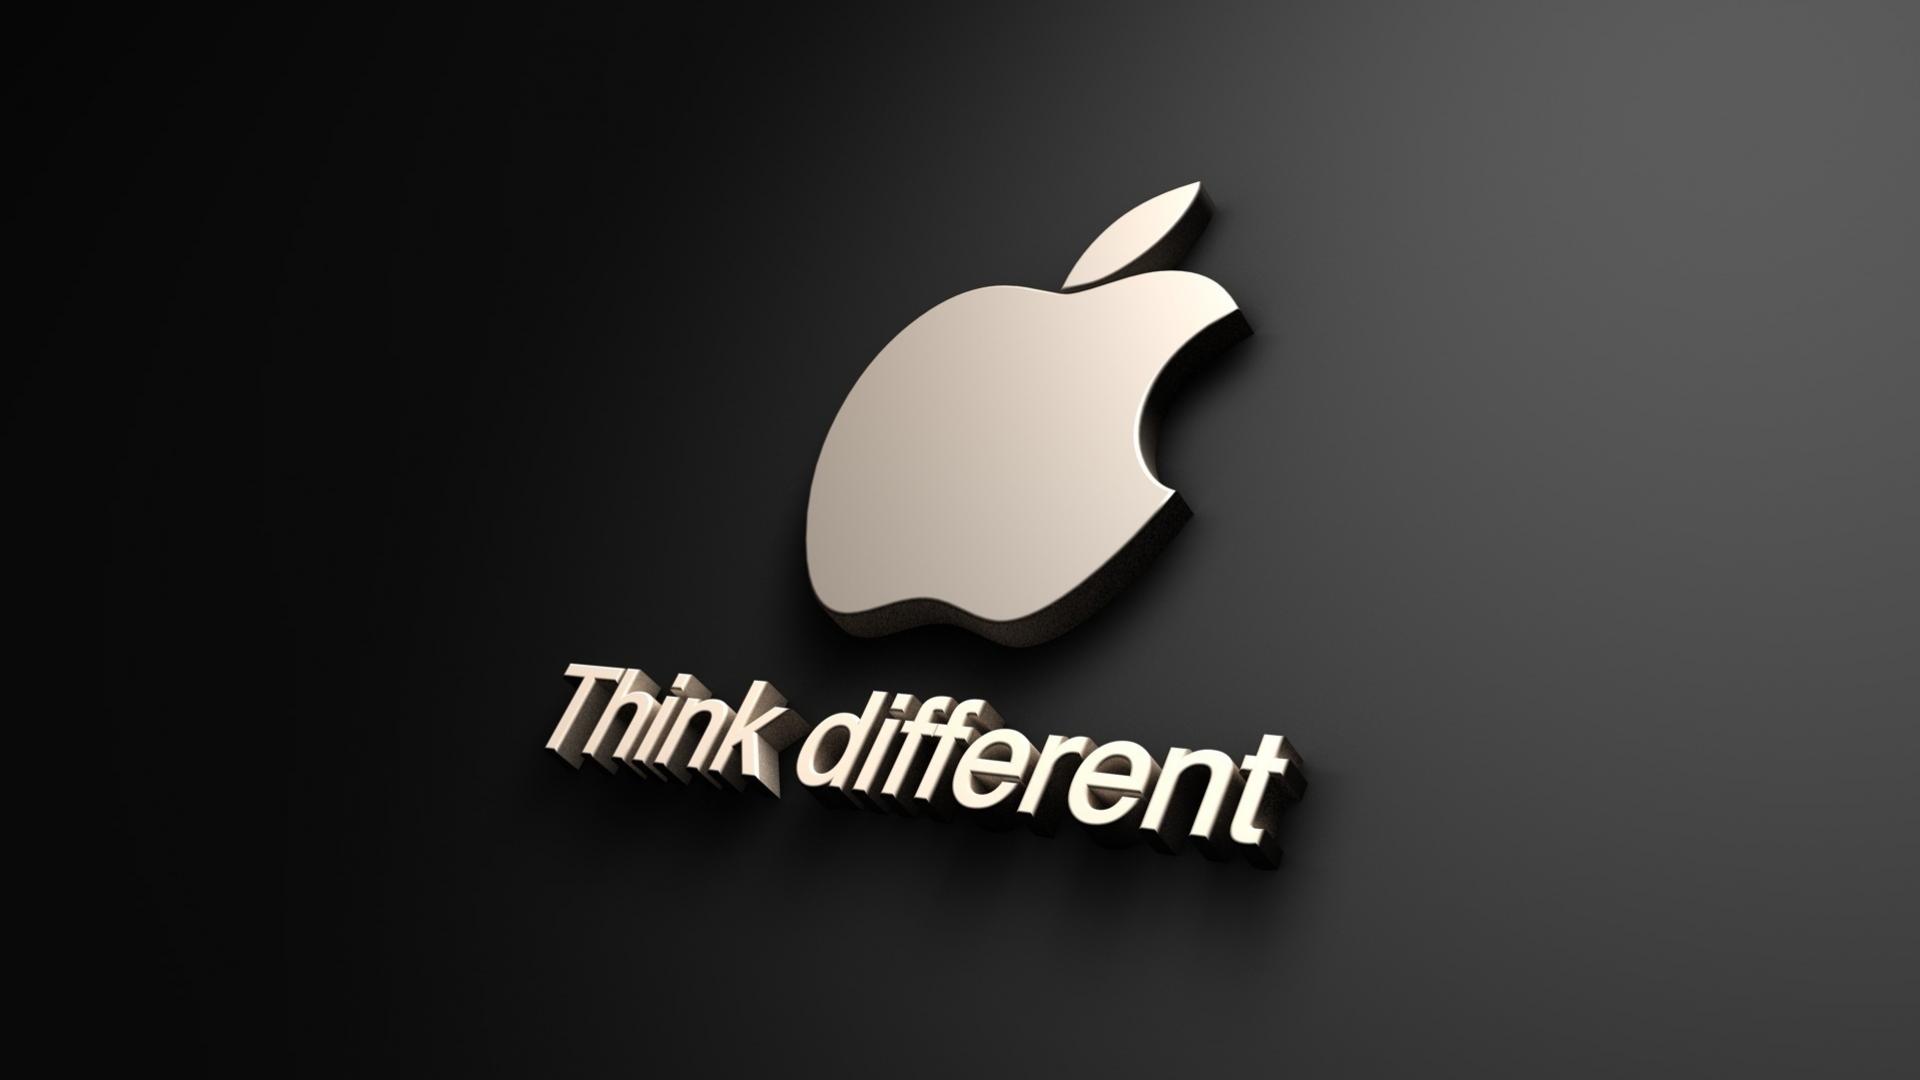 apple logo hd wallpapers #3